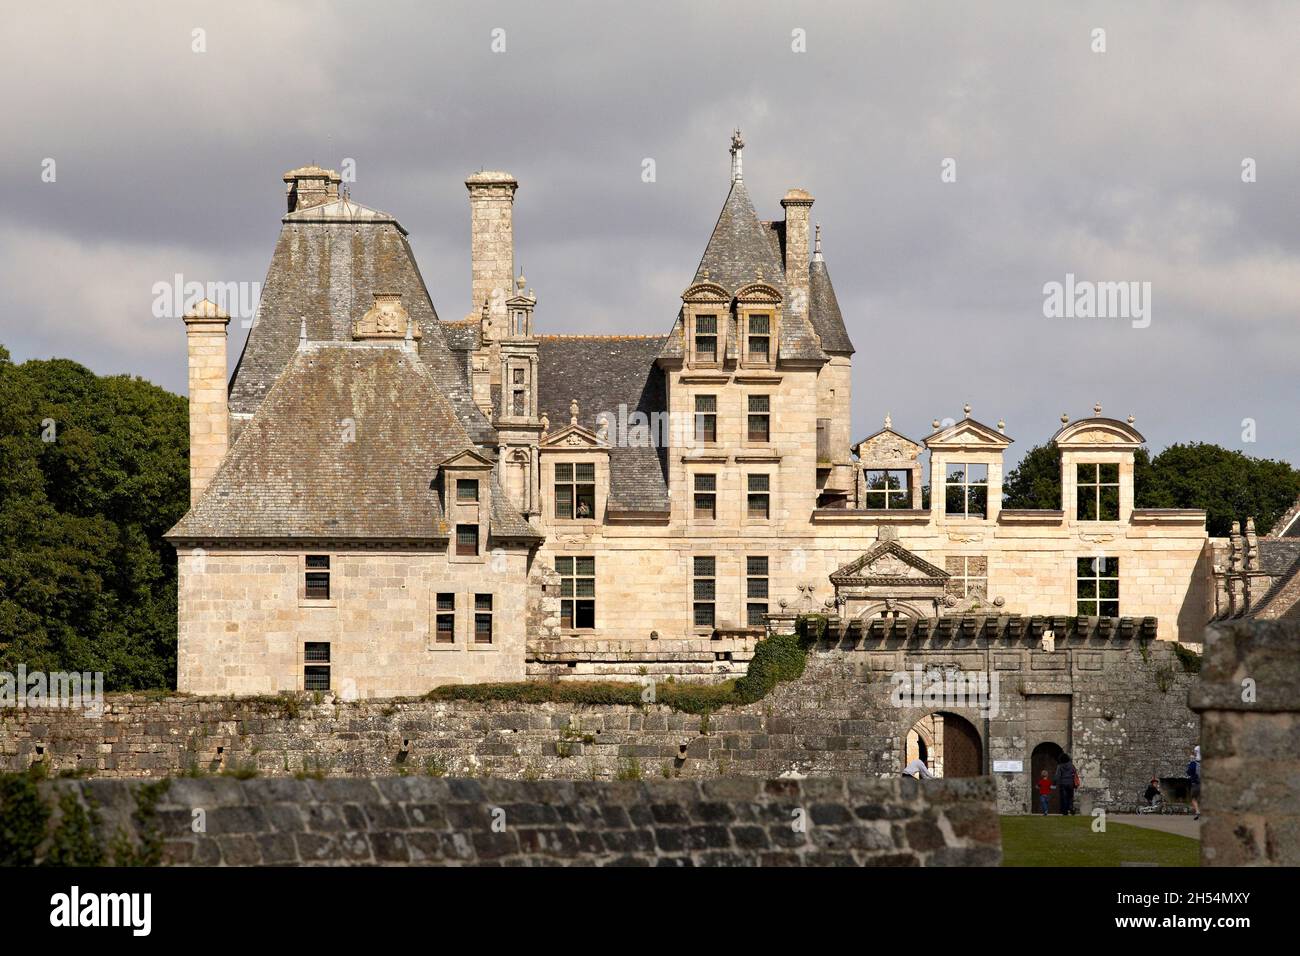 Chateau de Kerjean. Saint Vougay, Finisterre. Bretagne. France. Stock Photo